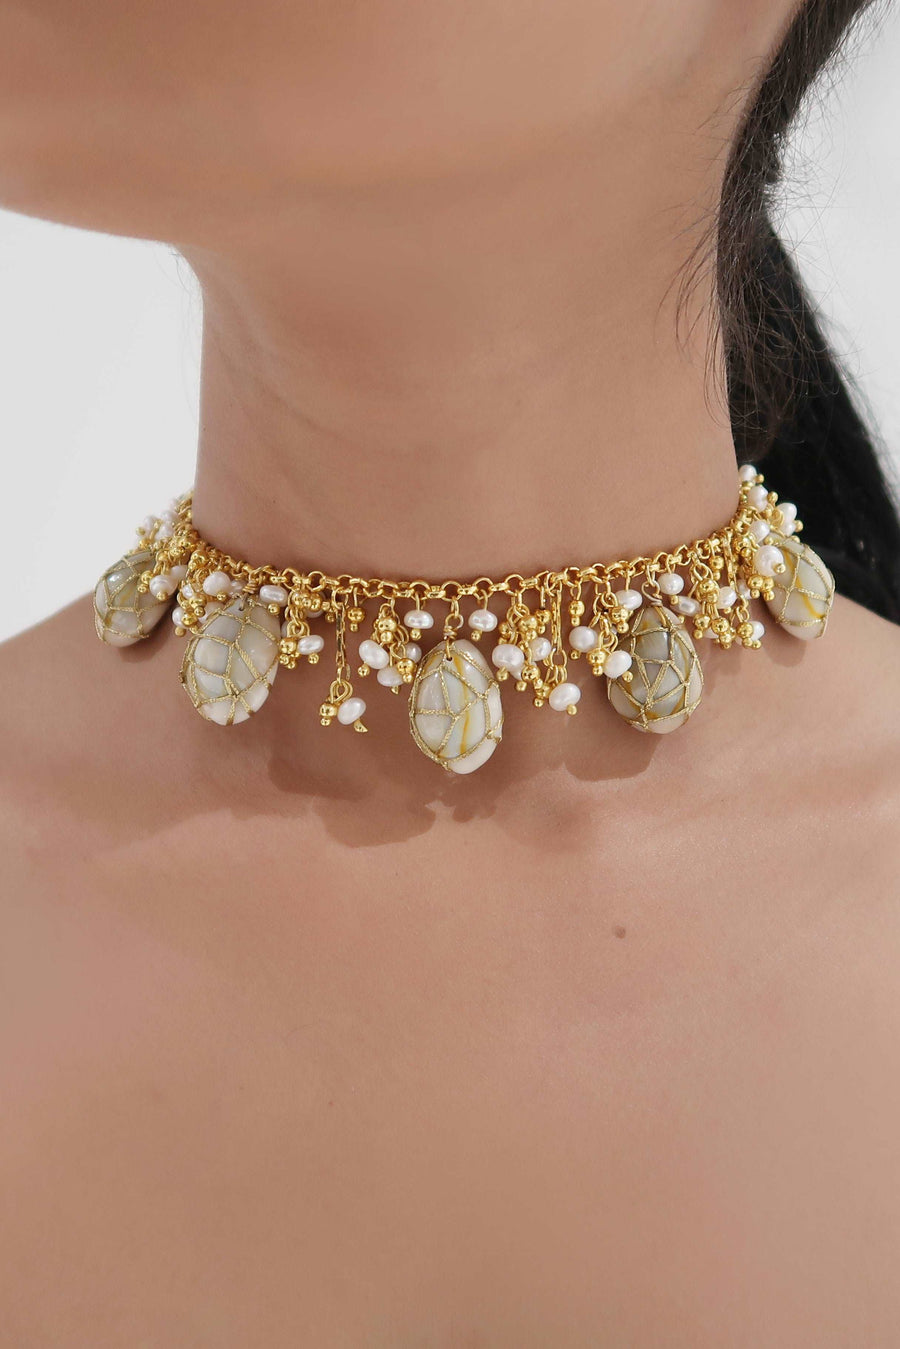 amama necklaces